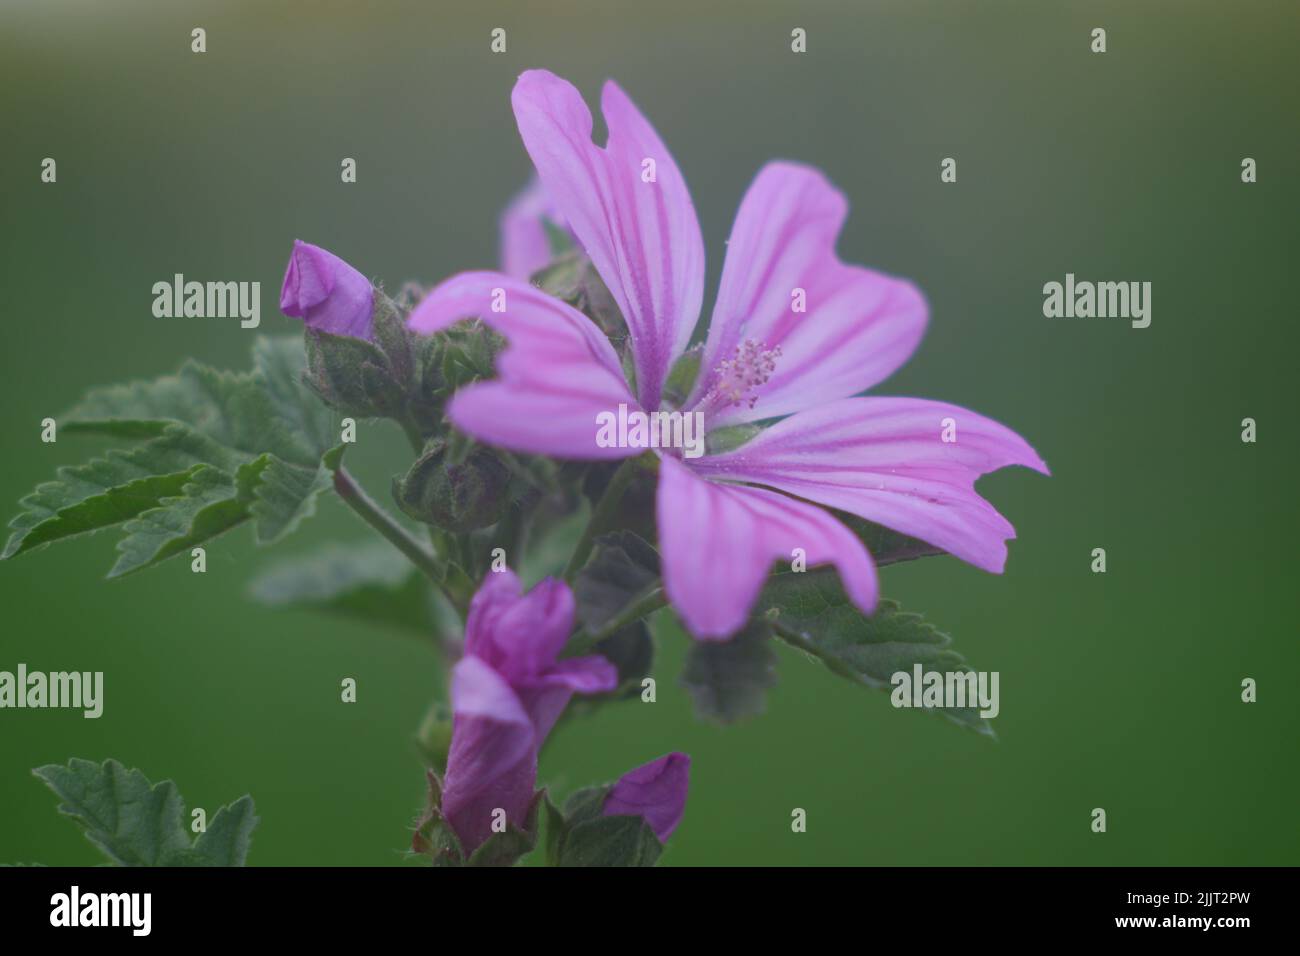 Eine Nahaufnahme der blühenden purpurnen Malva sylvestris-Blume, isoliert im grünen Naturhintergrund Stockfoto